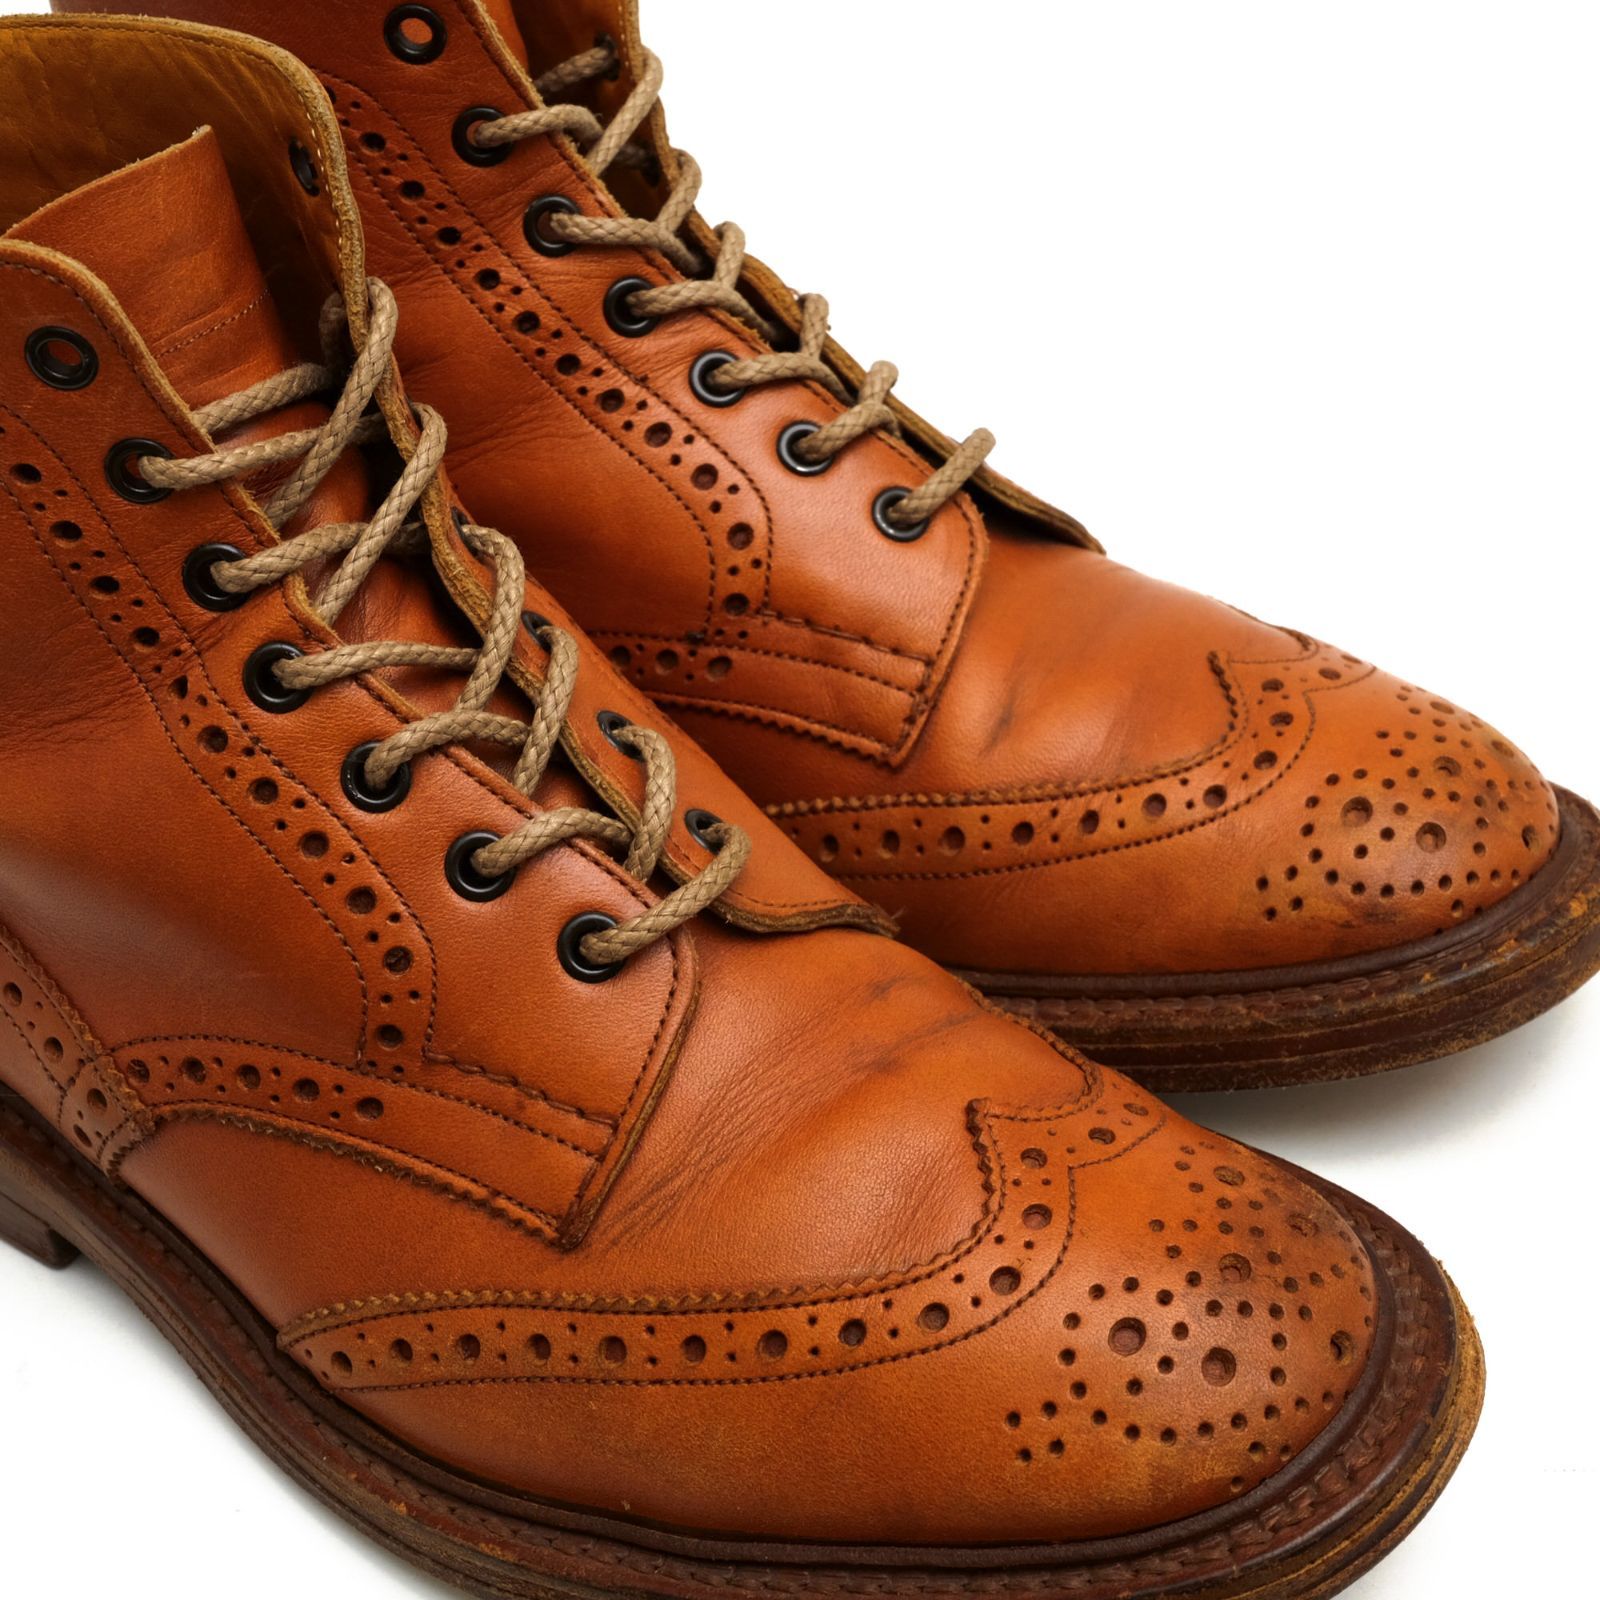 トリッカーズ／Tricker's レースアップブーツ シューズ 靴 メンズ 男性 男性用レザー 革 本革 ブラウン 茶  M2508 MALTON モールトン Brogue Boots ダブルソール カントリーブーツ ウイングチップ 定番 グッドイヤーウェルト製法靴/シューズ